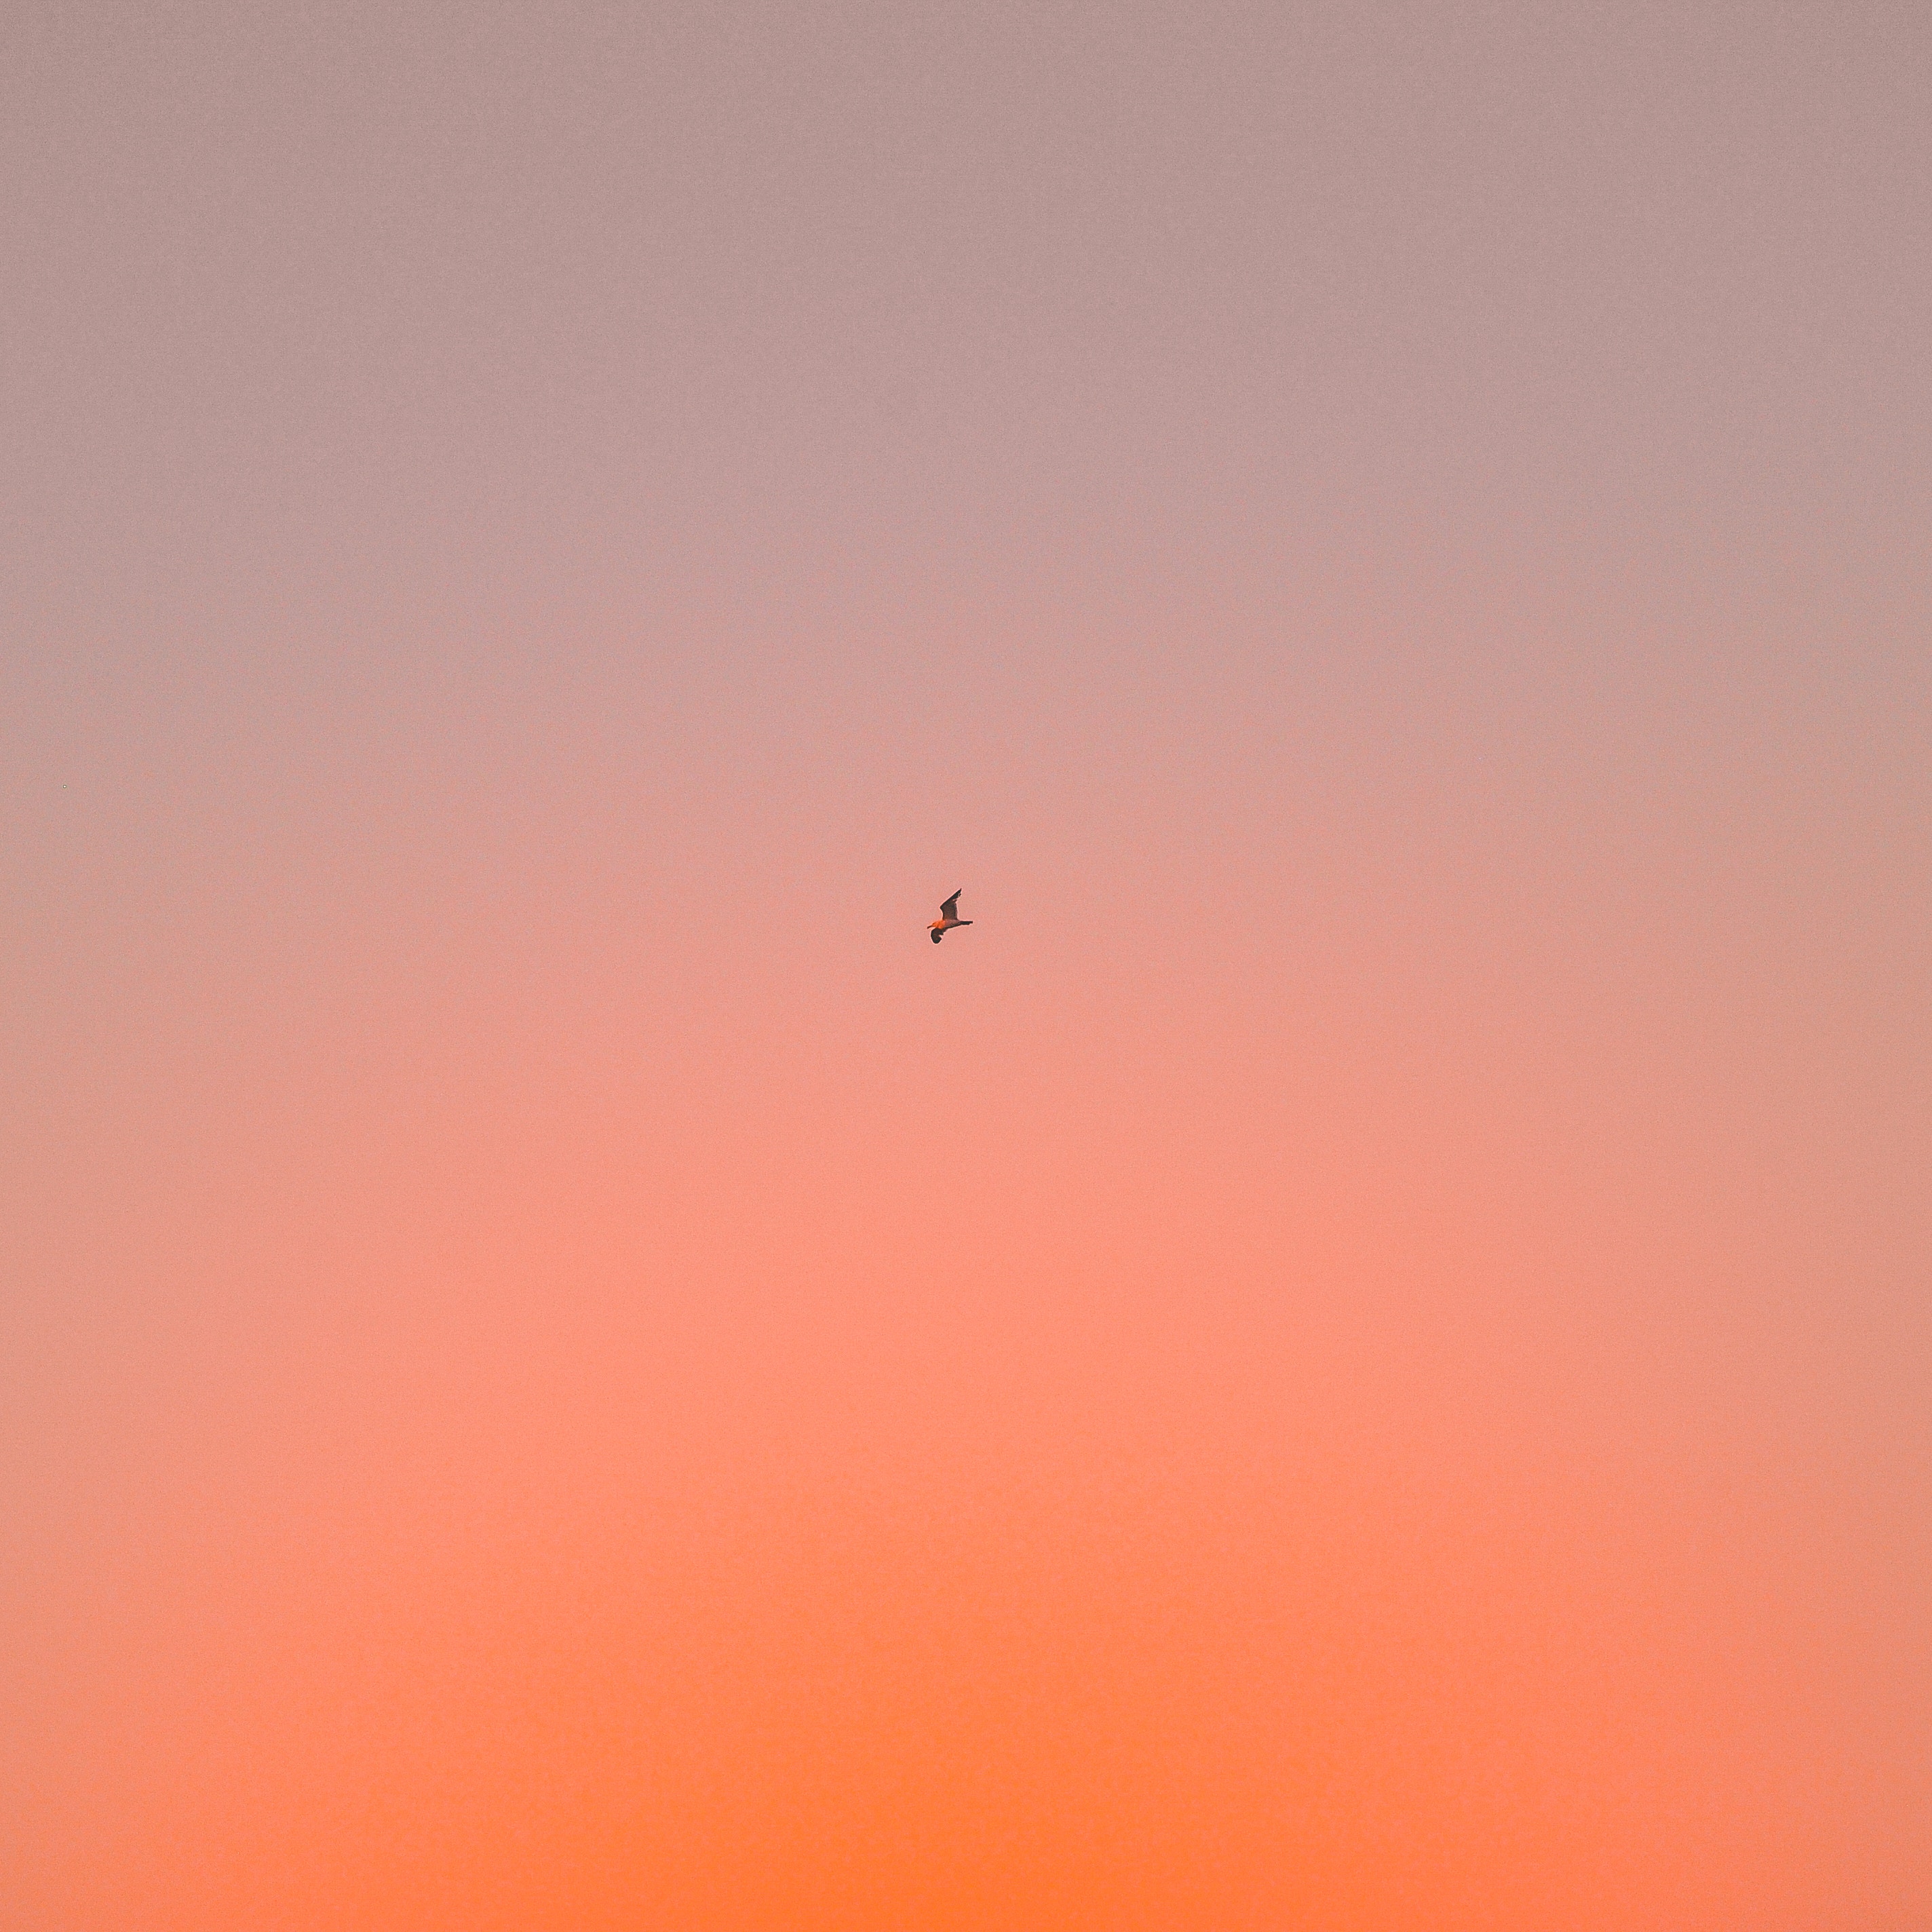 gradient, minimalism, bird, sky, flight